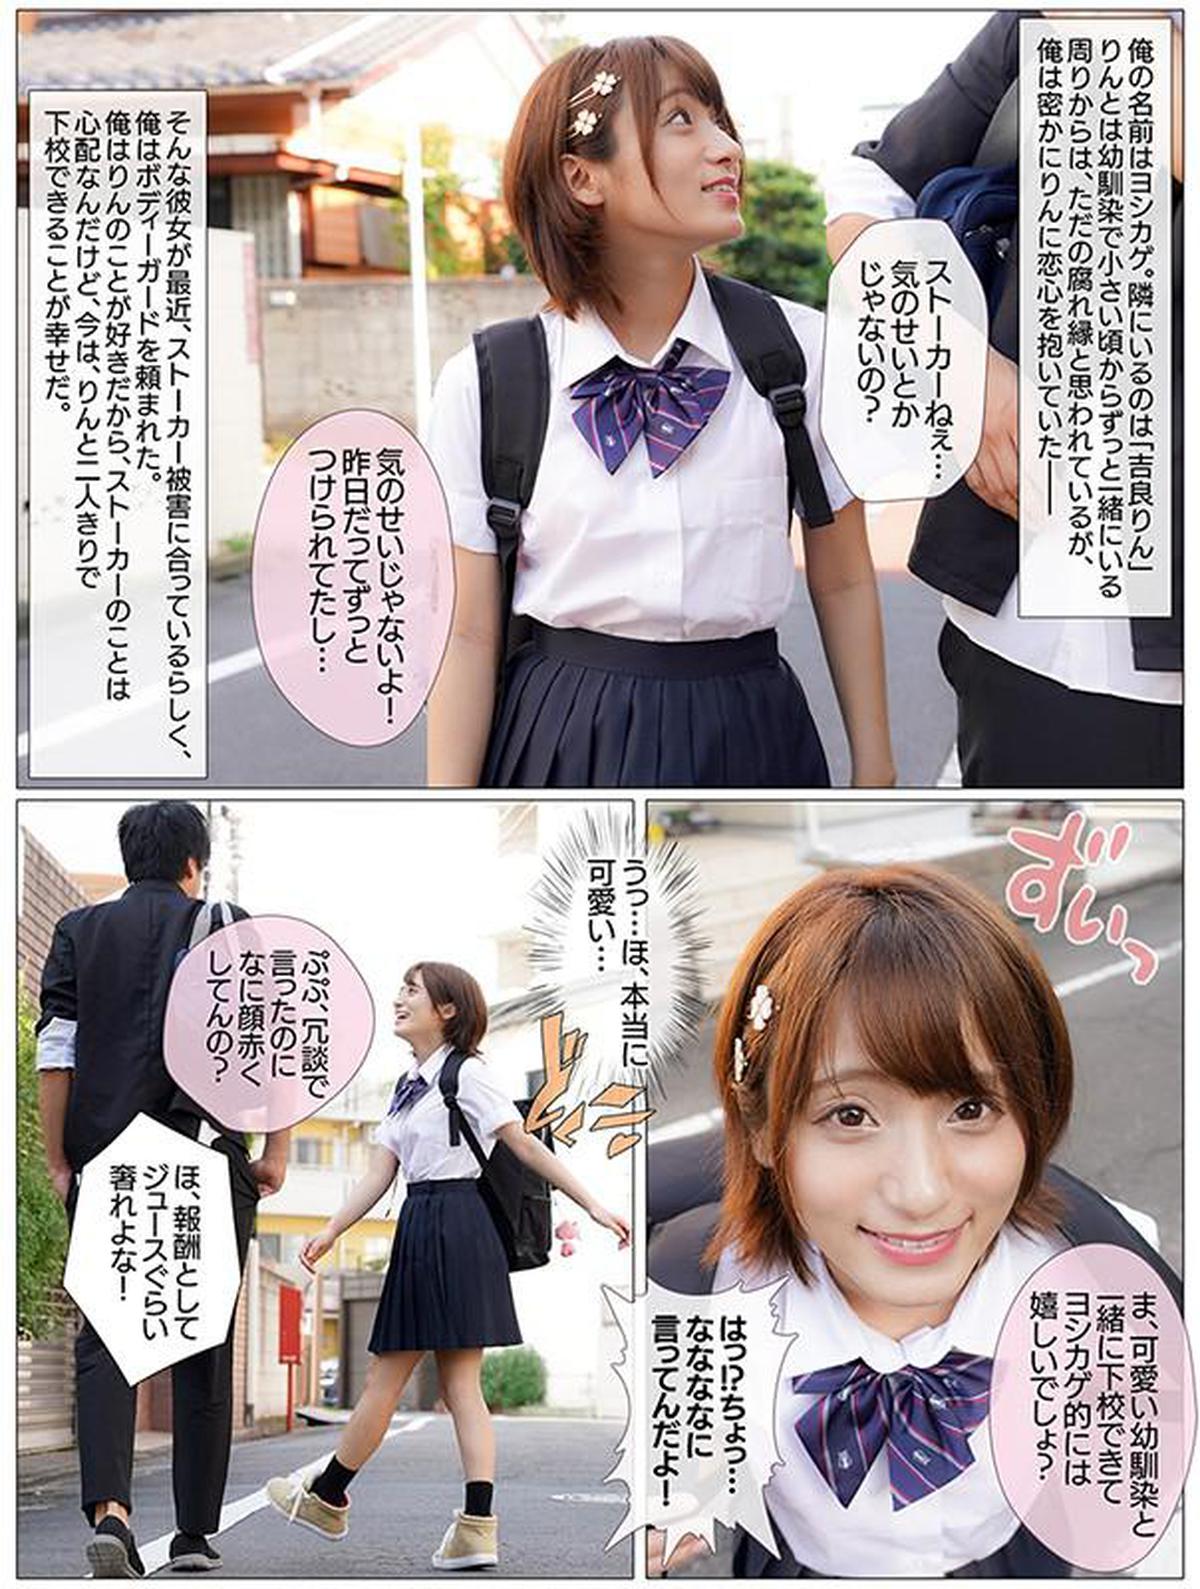 6000Kbps FHD MKON-041 Rin Kira pidió un guardaespaldas mientras dejaba la escuela por un amigo de la infancia que está acechando dañado